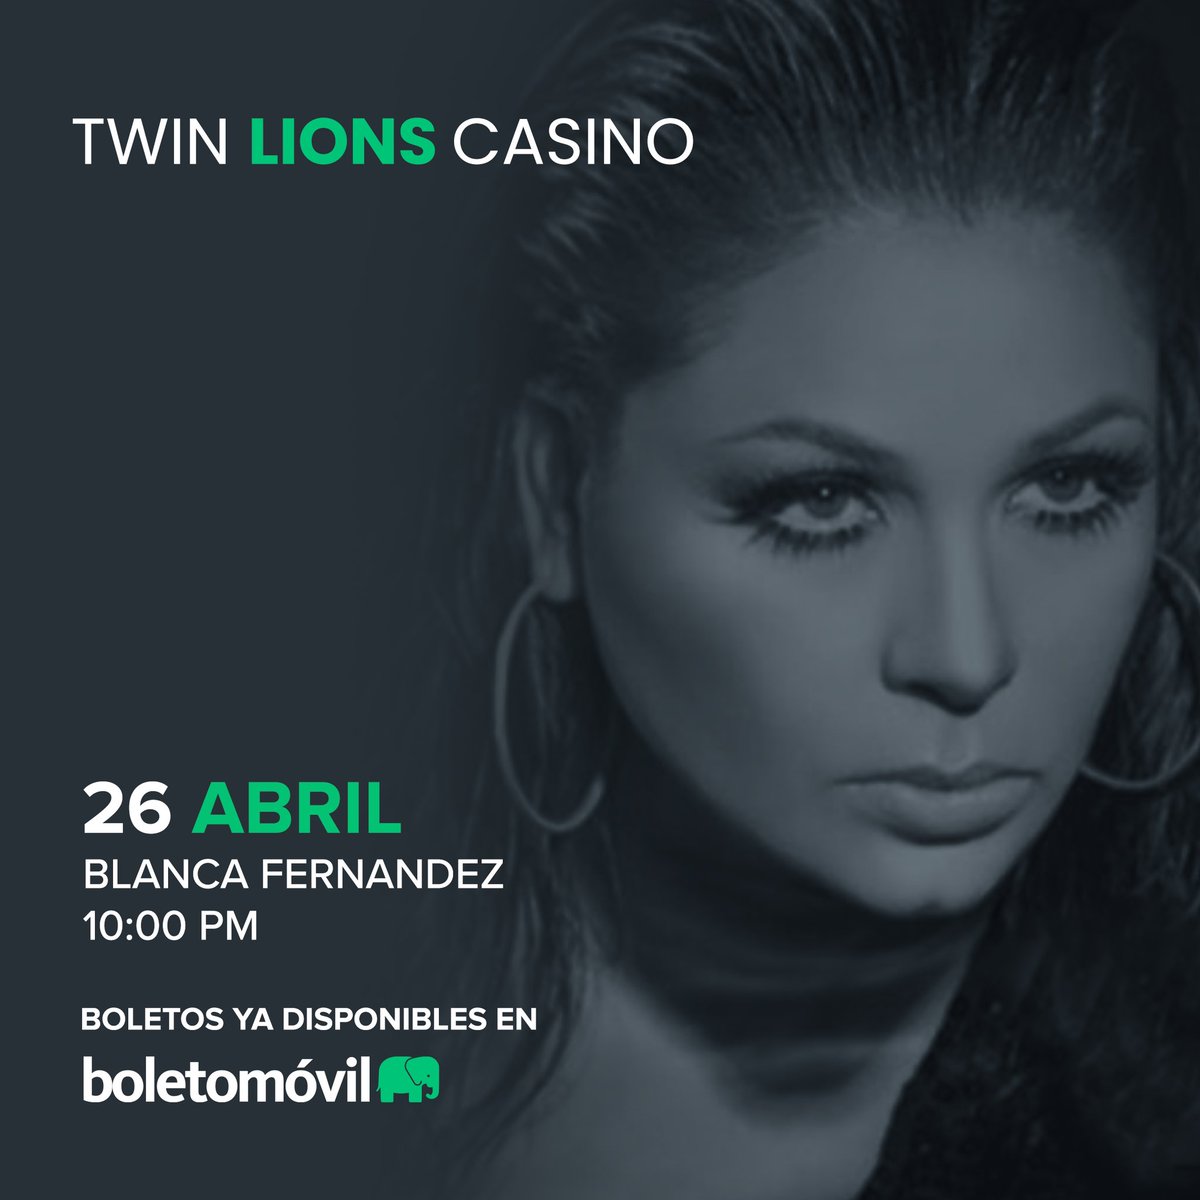 Prepárate para una noche de casino y buena música con Blanca Fernández en @TwinLionsJalisc 🎰✨ 🎟️ Compra tus boletos aquí: bit.ly/47mRPDM